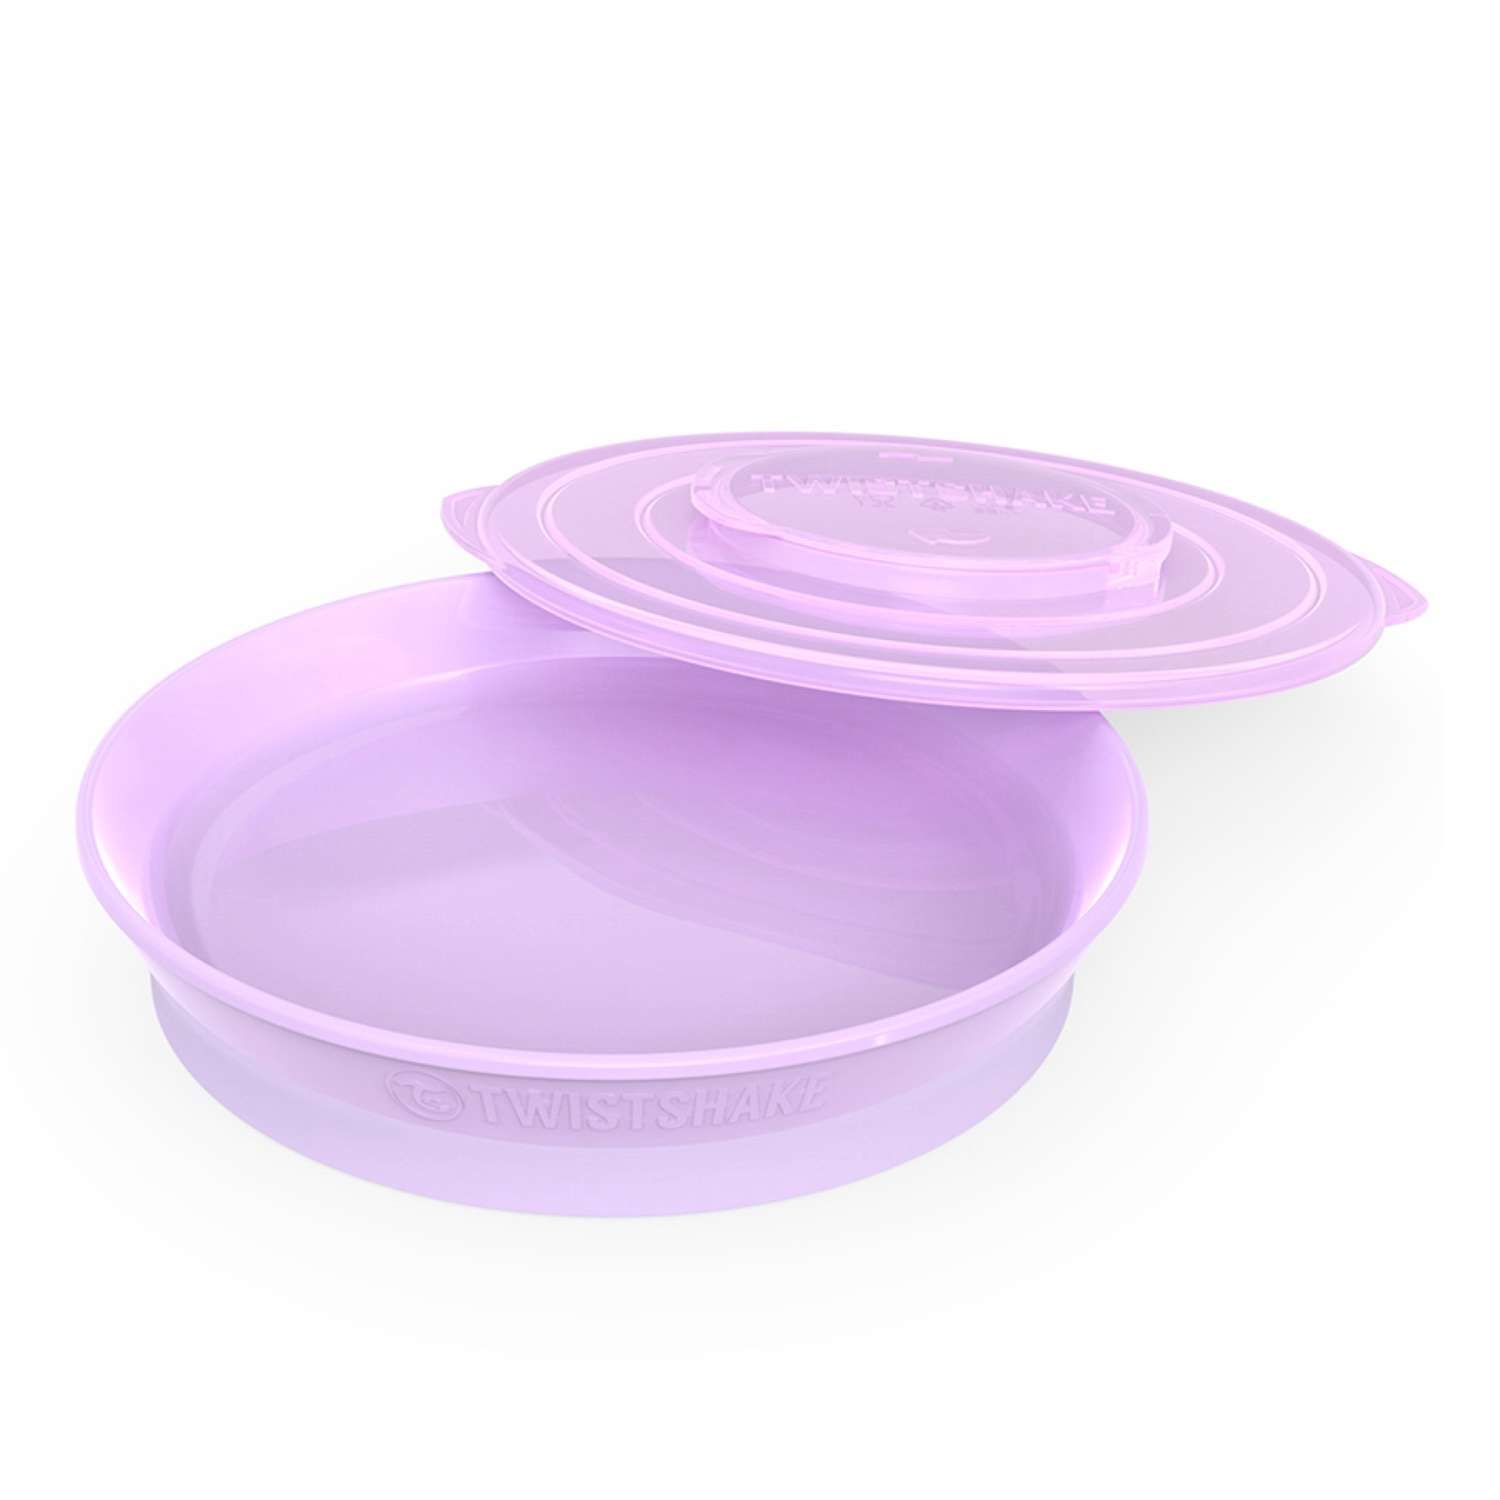 Тарелка Twistshake Пастельный фиолетовый - фото 1